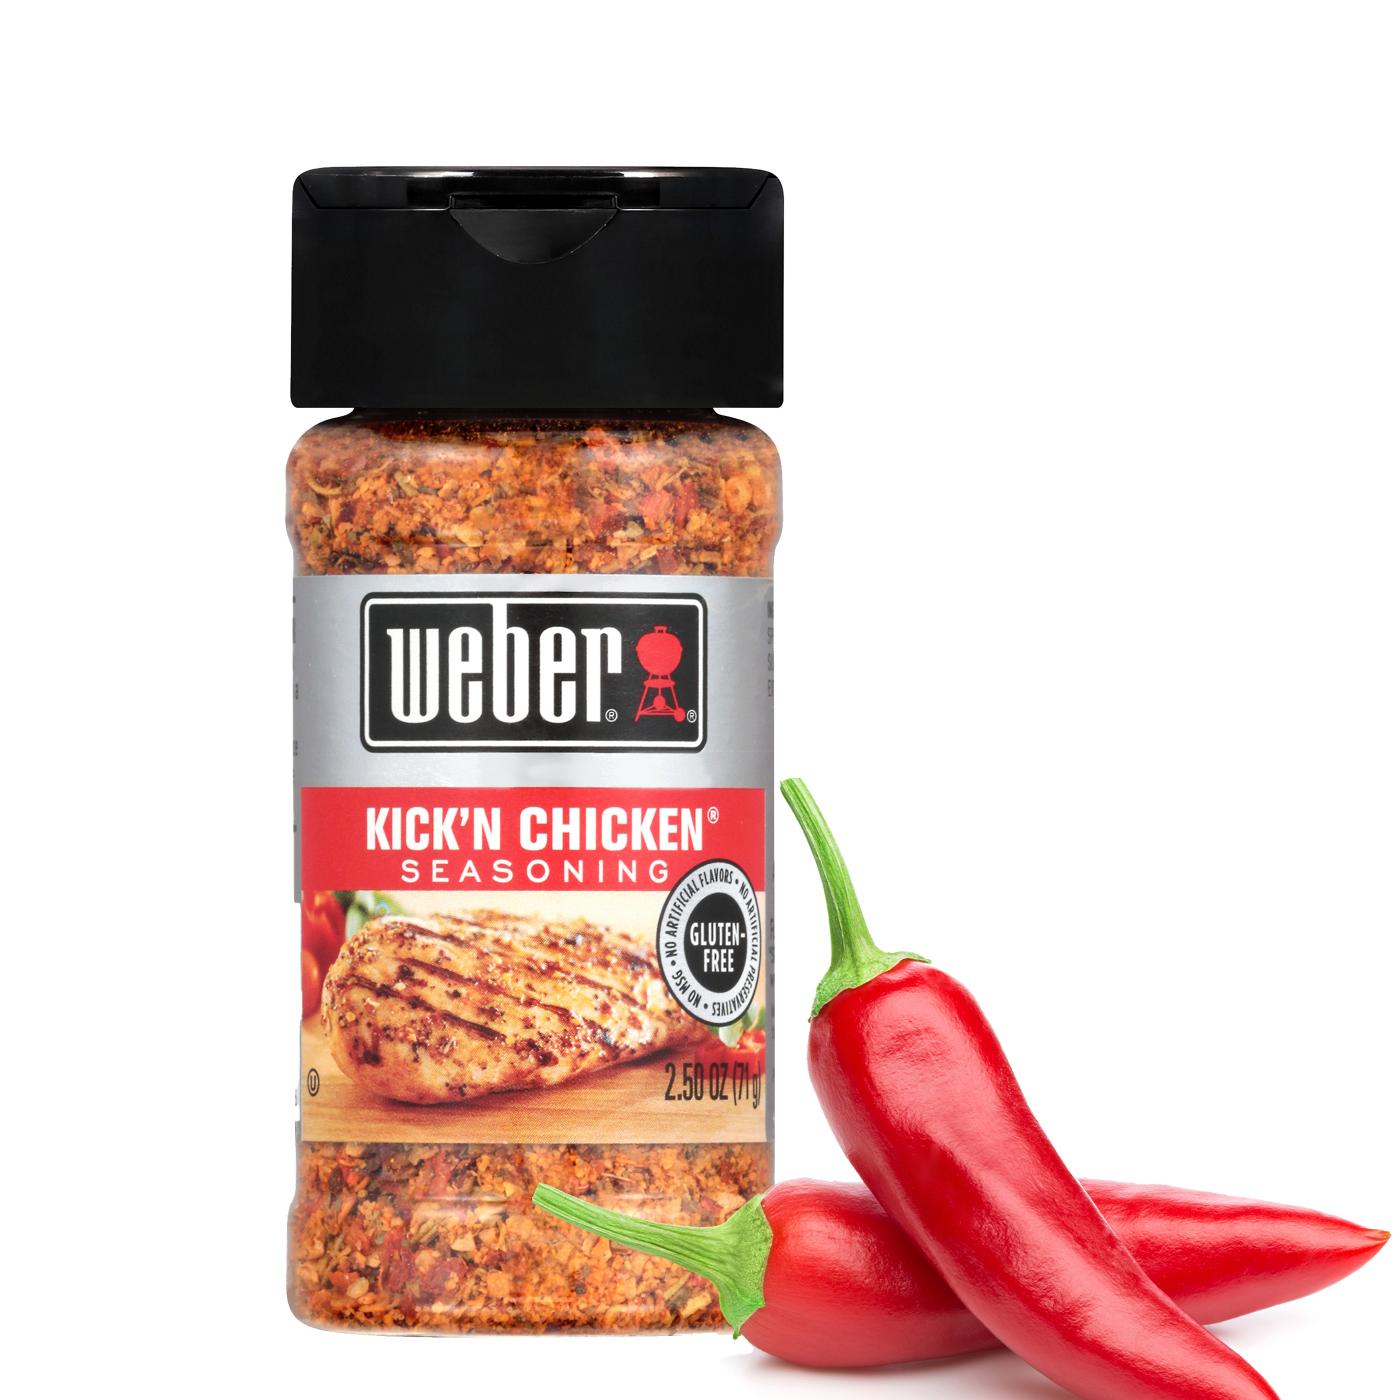 Weber Kick'n Chicken Seasoning Review